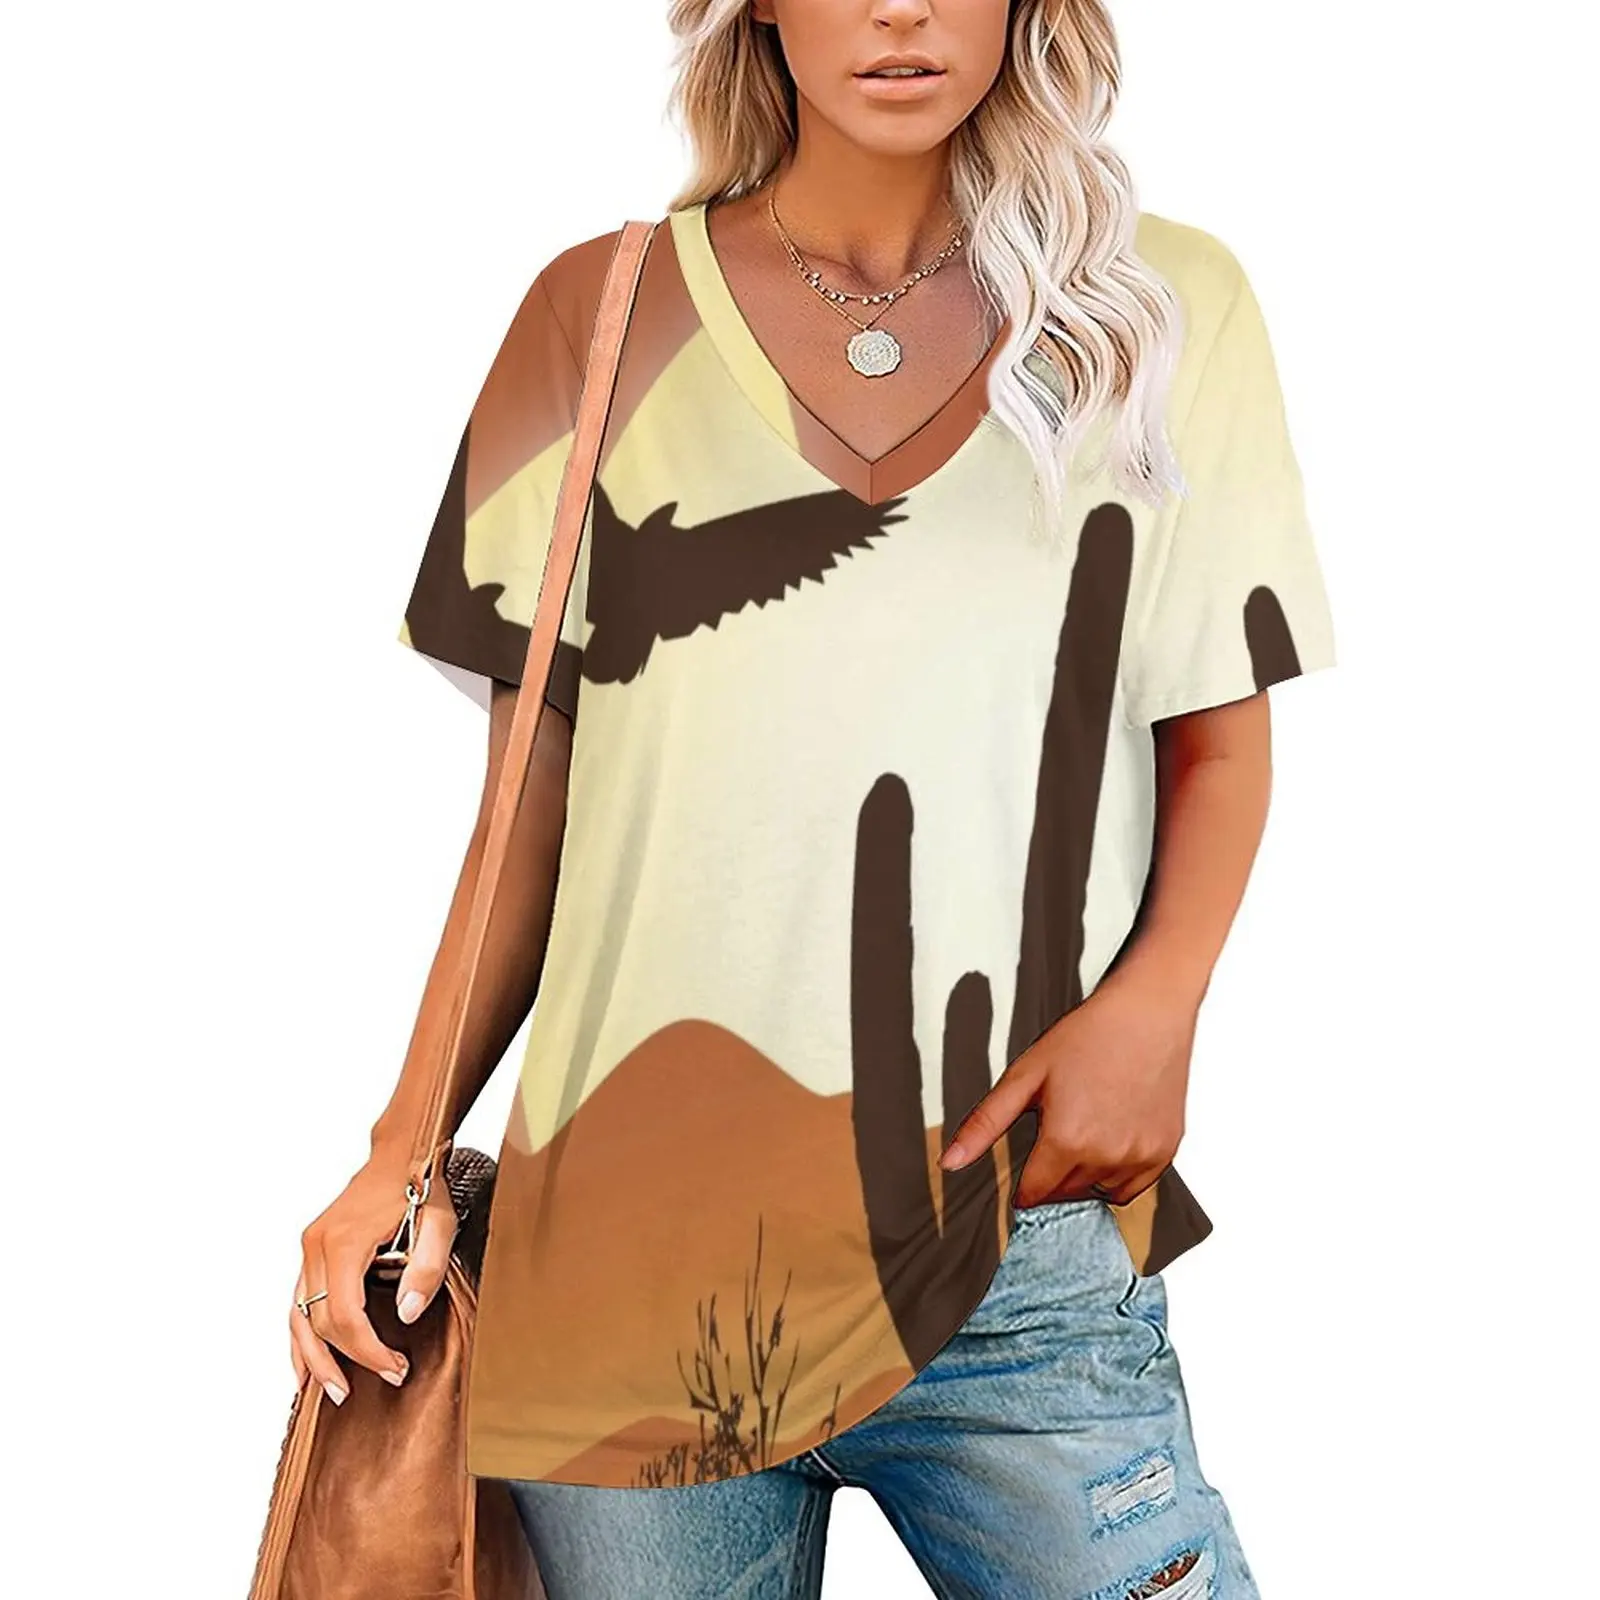 

Закат Вестерн футболка с изображением пустыни кактус и орел смешные футболки с v-образным вырезом короткий рукав пользовательские Топы повседневные футболки большой размер 2XL 3XL